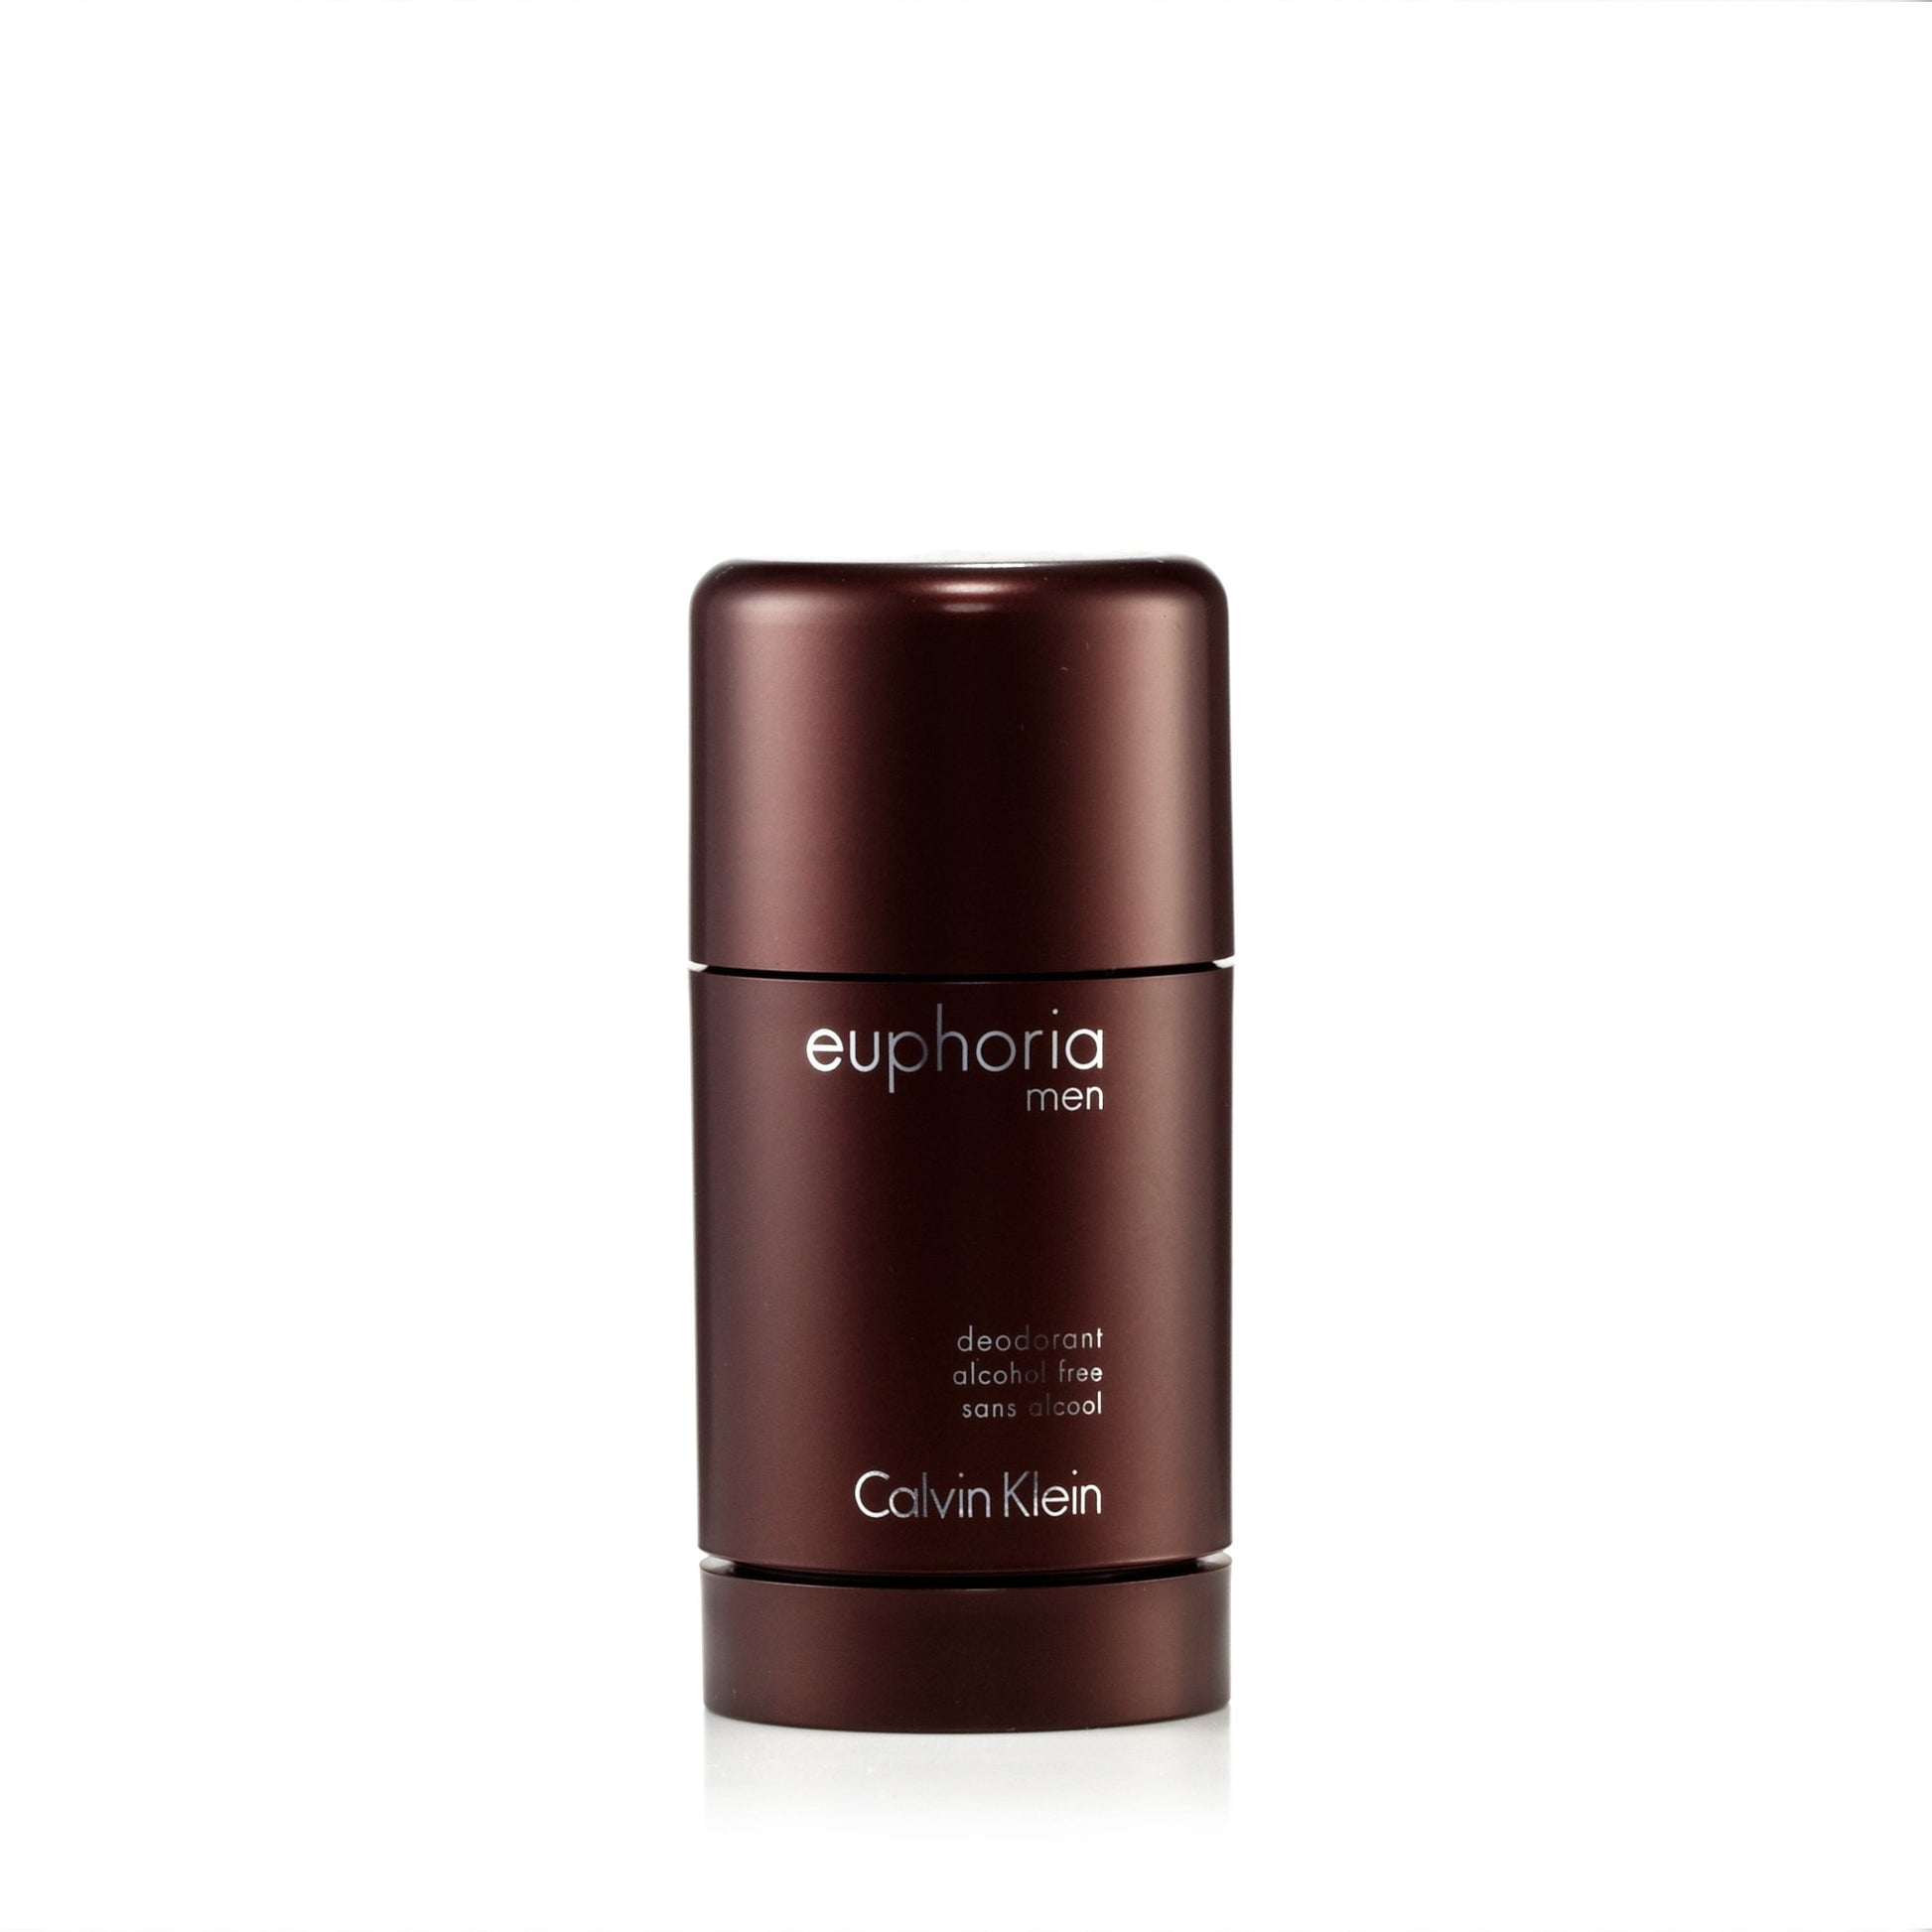 Euphoria Deodorant for Men by Calvin Klein 2.6 oz. Click to open in modal